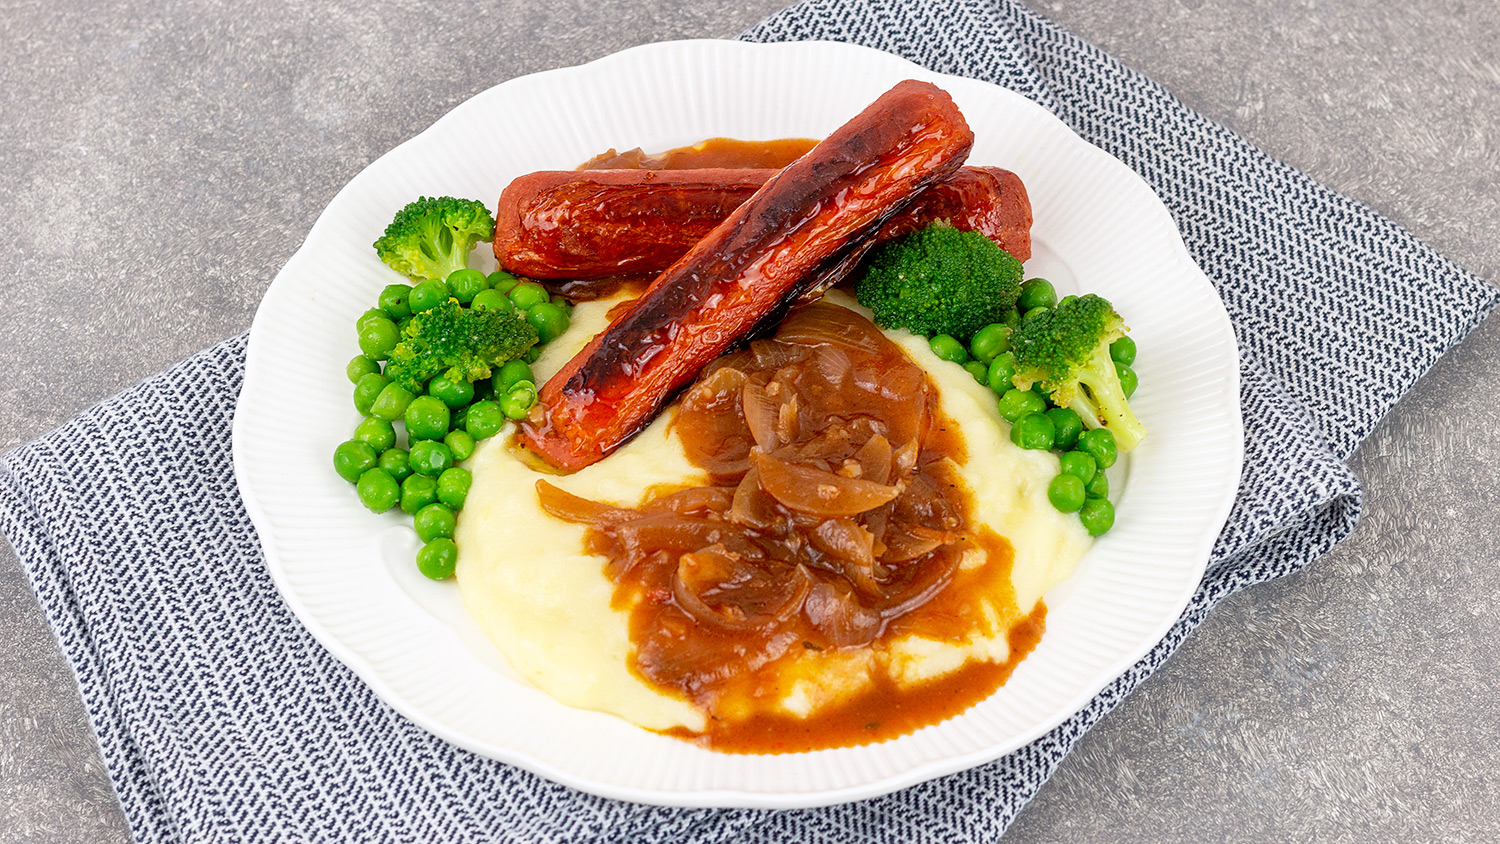 Vegan bratwurst with mashed potatoes